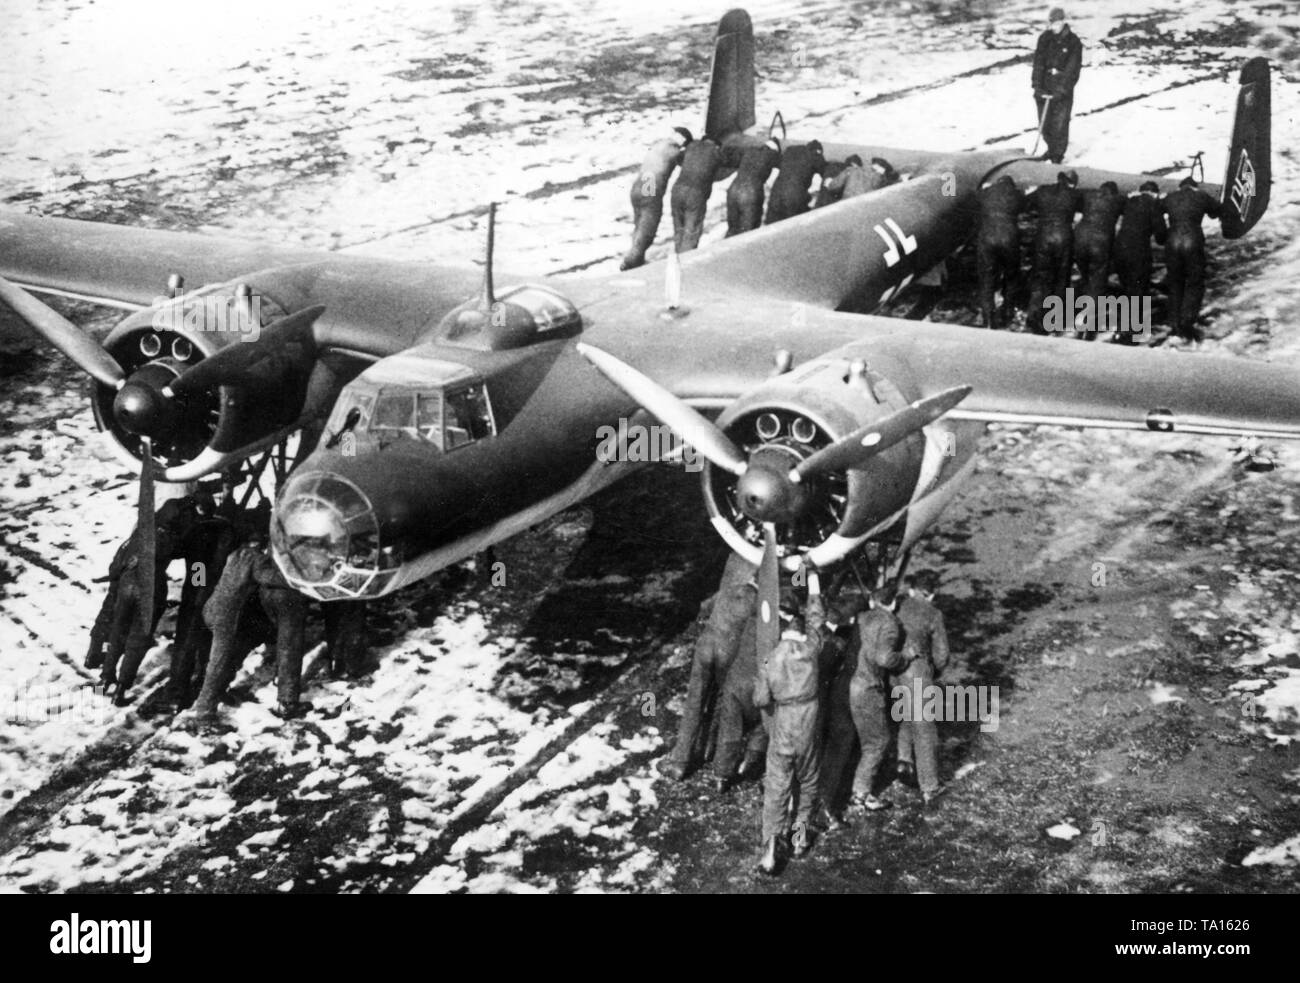 Bodenpersonal auf eine Dornier Do 17 F Kampfflugzeugen (vermutlich 9) auf einem Flugplatz. Undatiertes Foto, vermutlich in den 1930er Jahren. Stockfoto